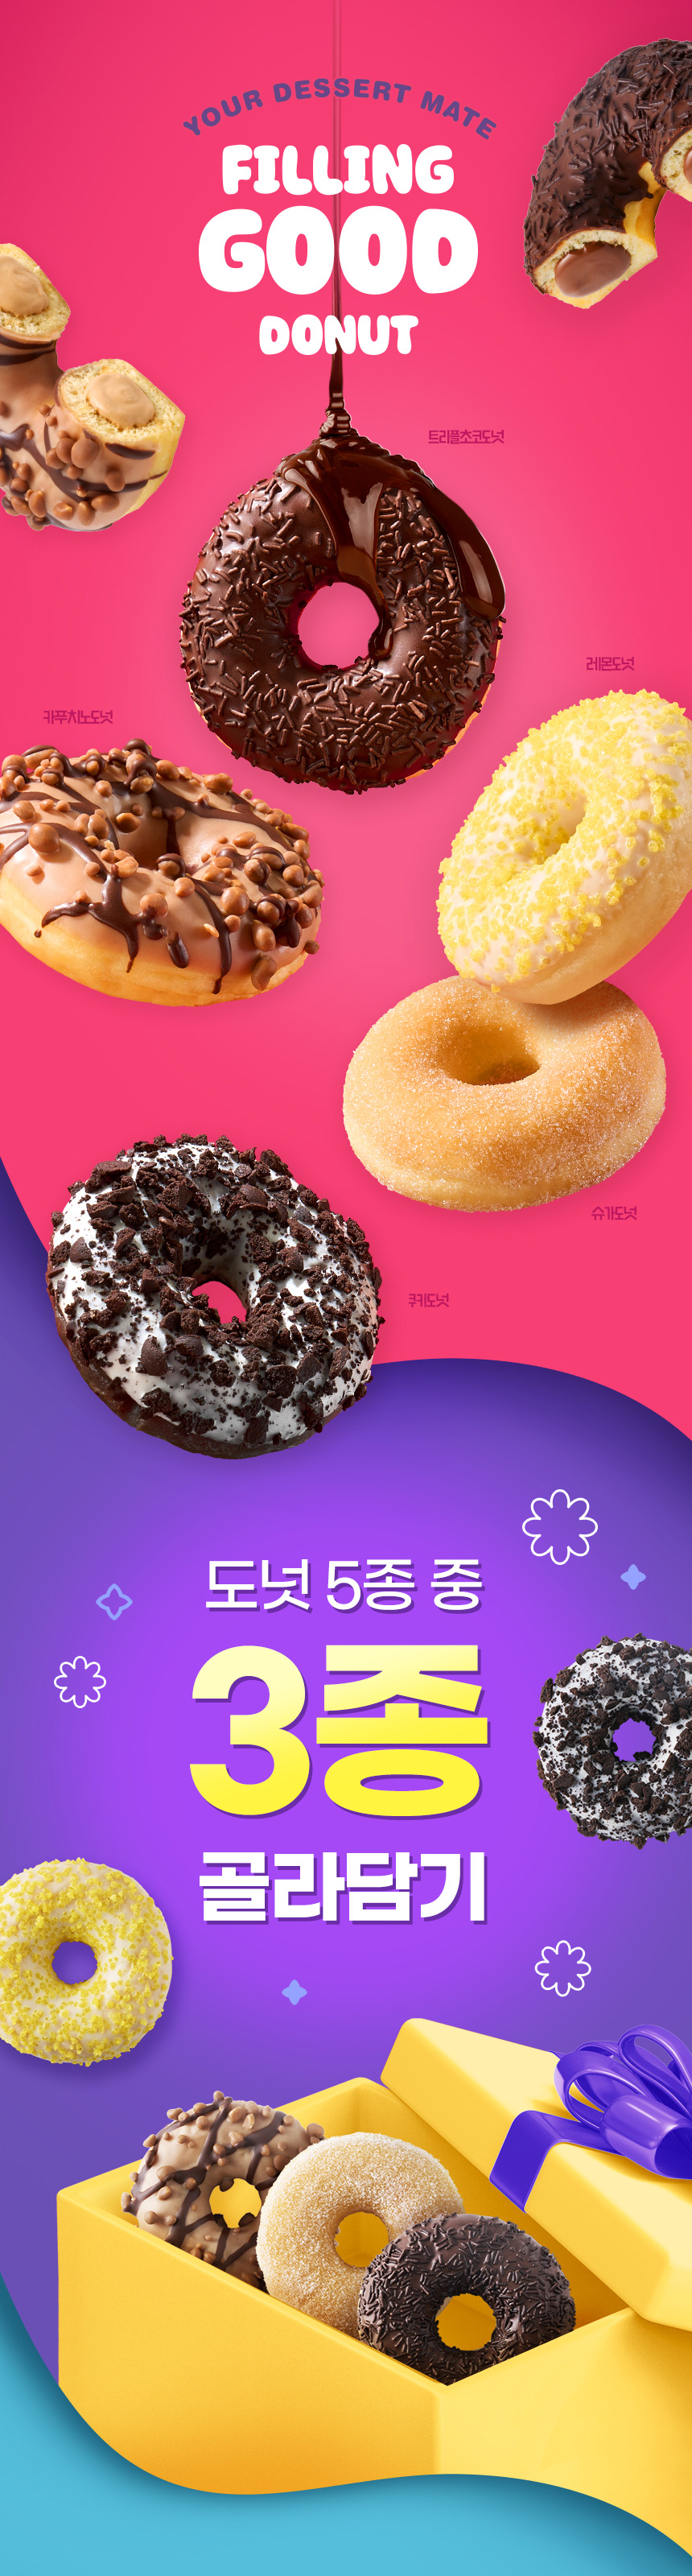 Filing_Good_Donut_3choice_01